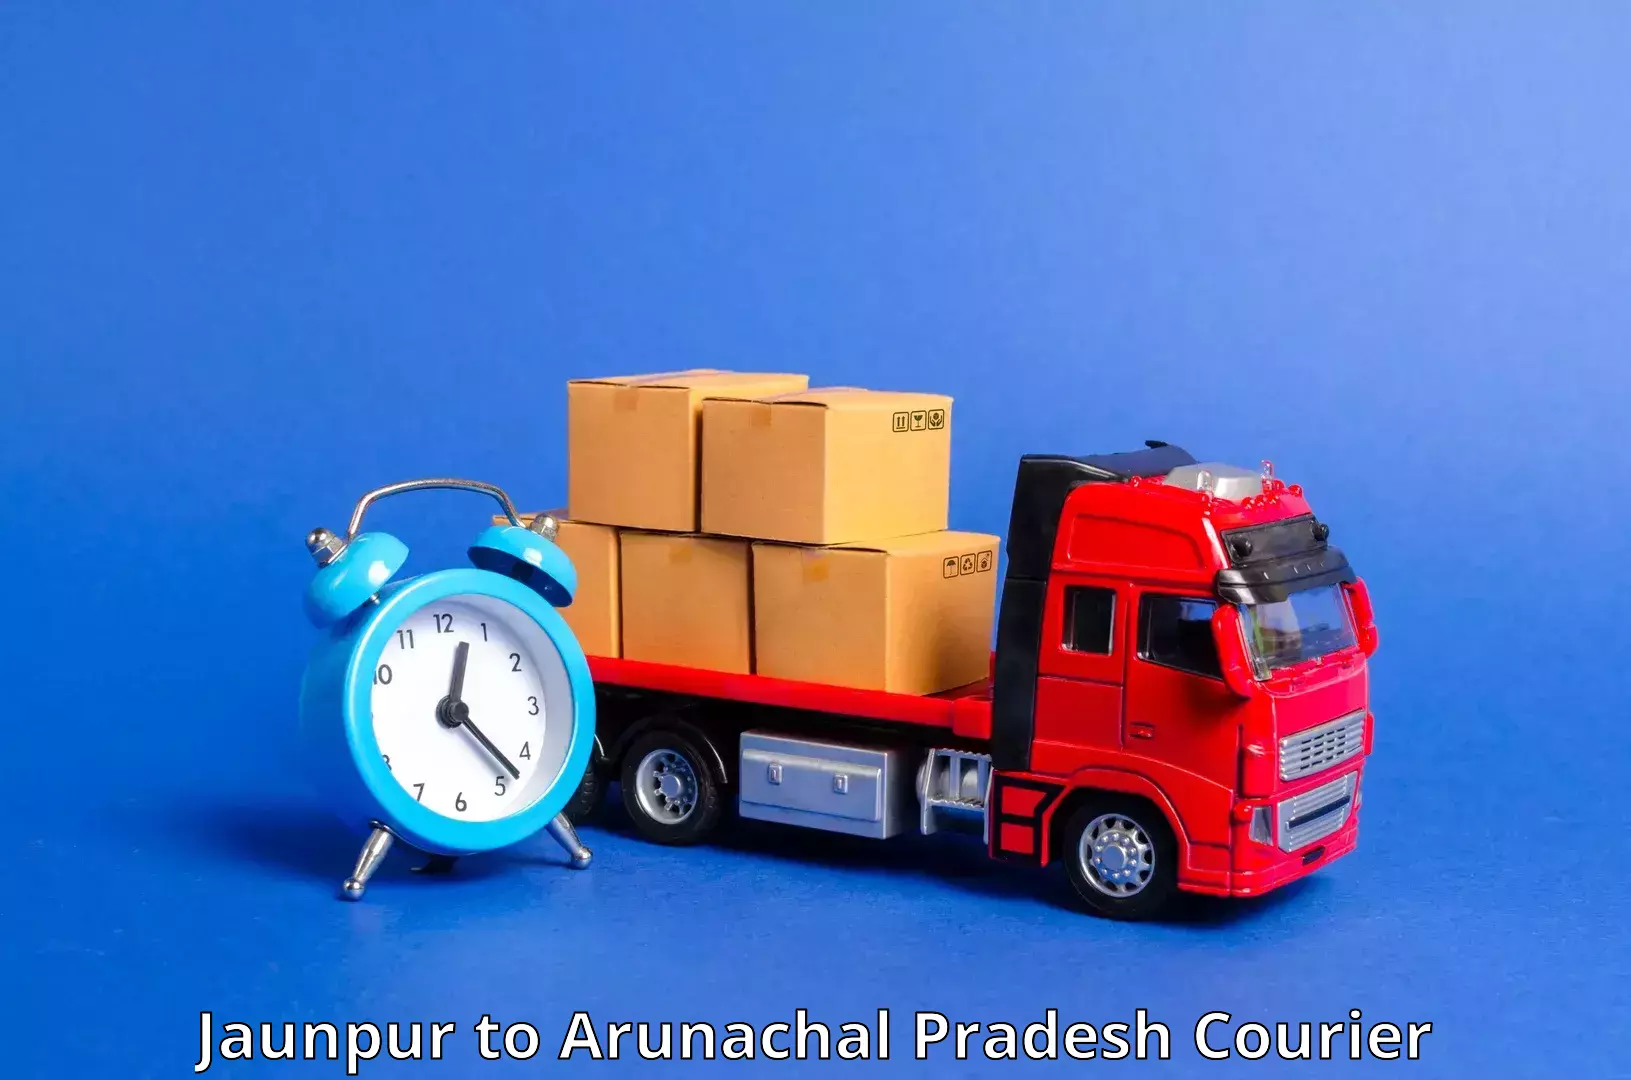 Professional parcel services in Jaunpur to Arunachal Pradesh